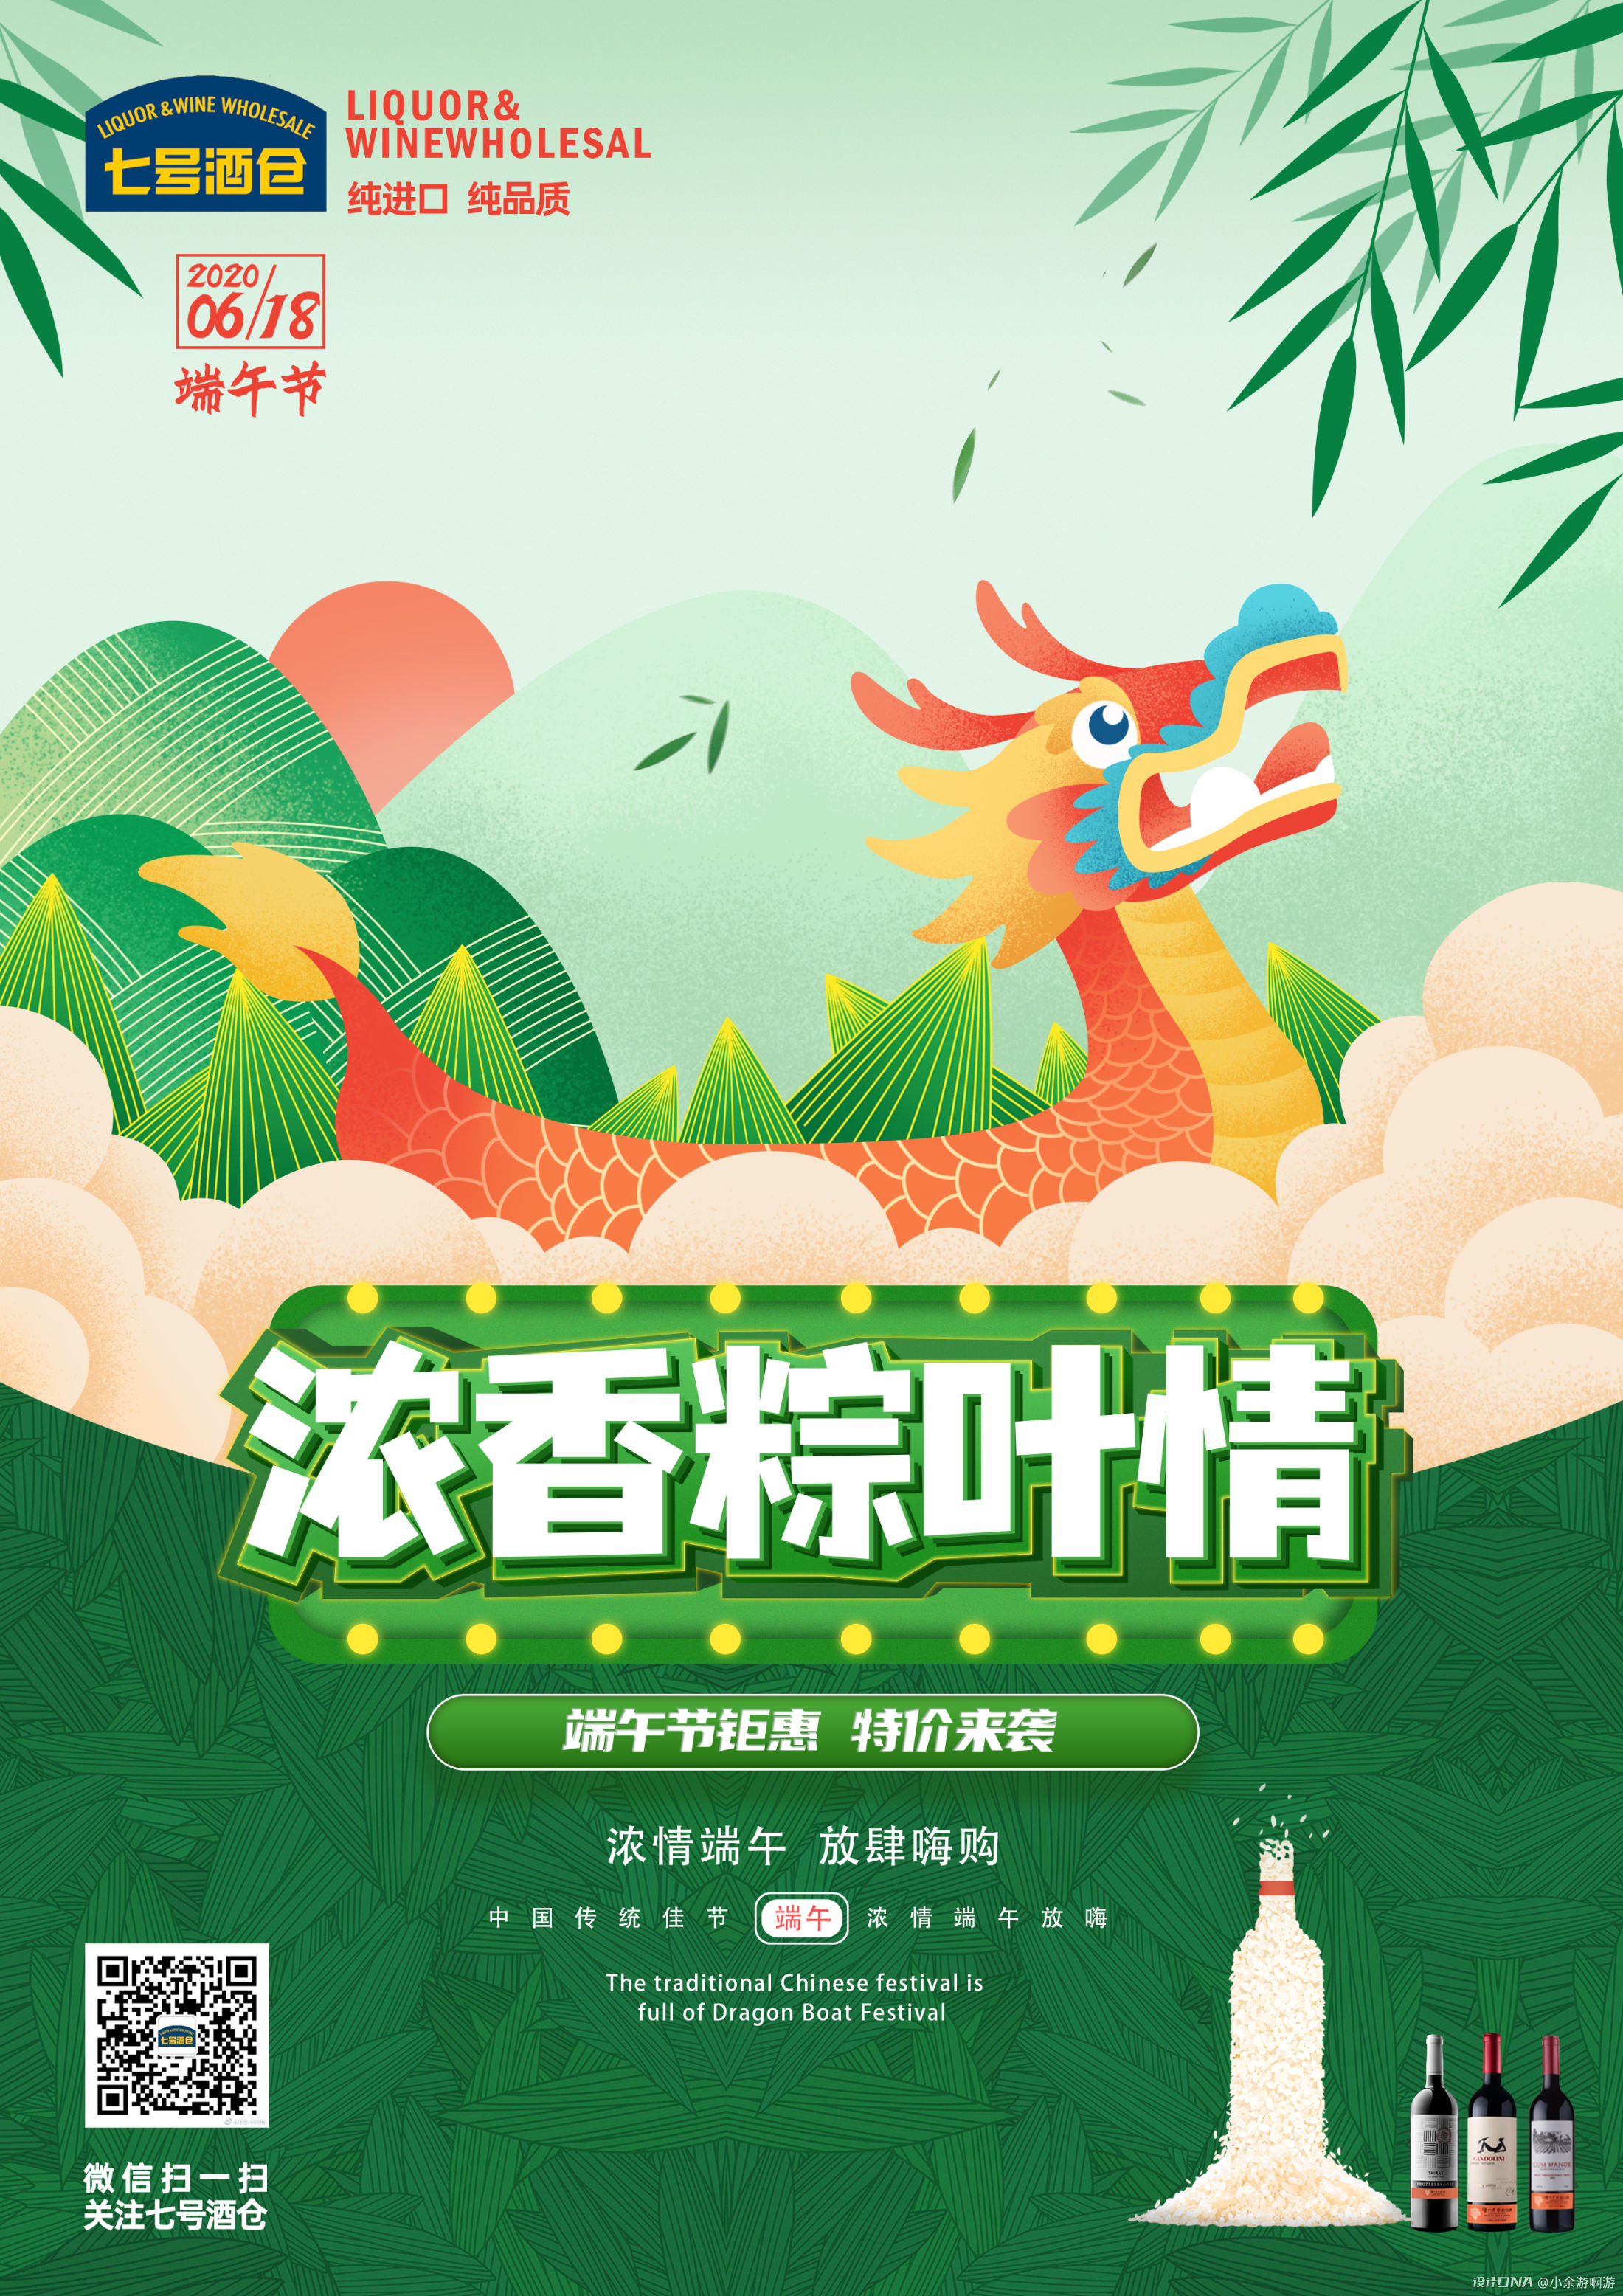 绿色粽子可爱端午节节日分享中文微信朋友圈 - 模板 - Canva可画